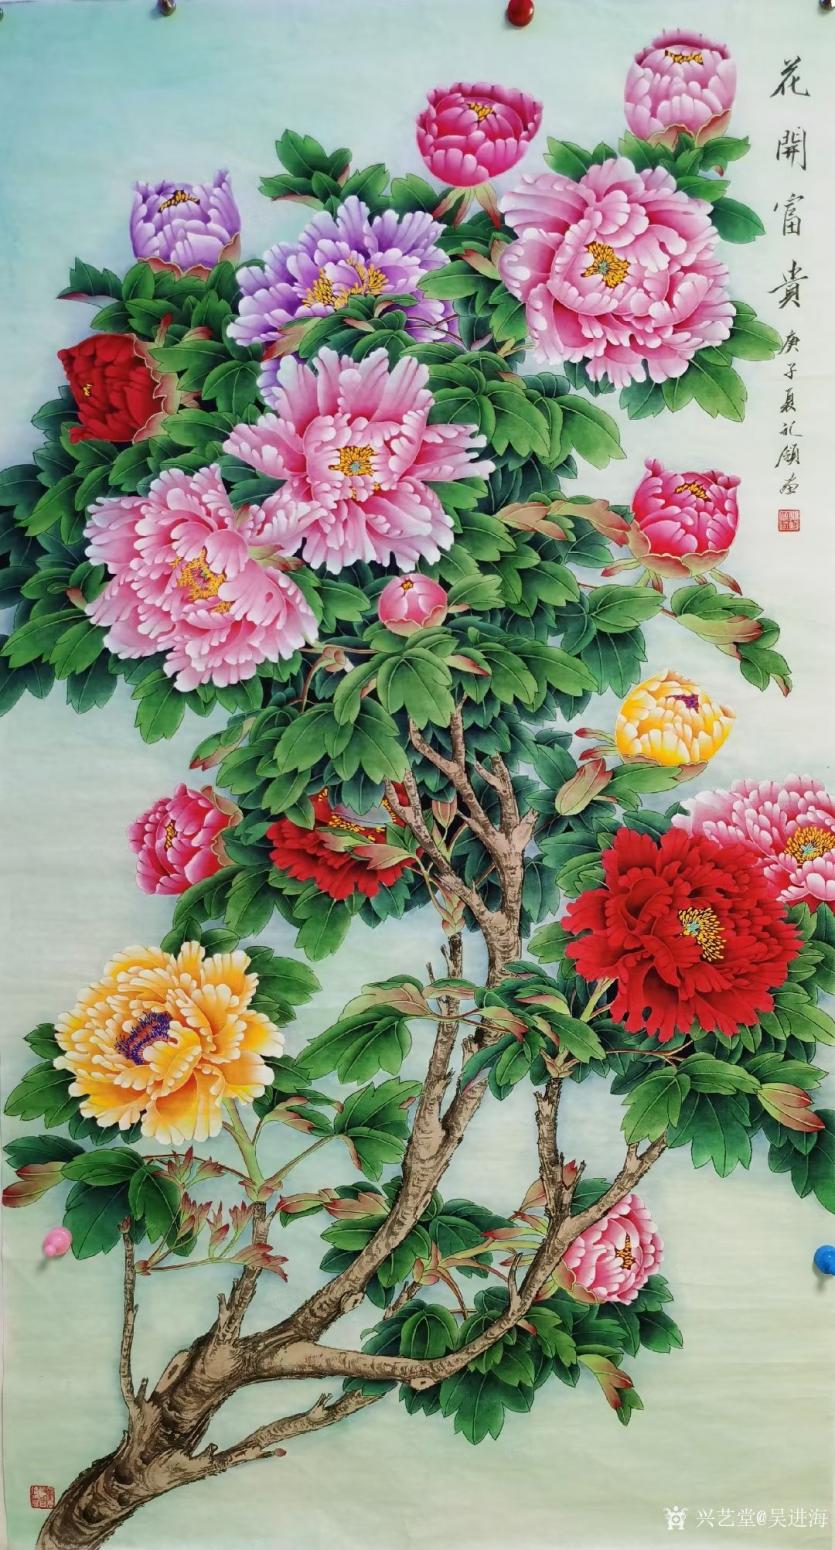 吴进海国画作品《花开富贵》